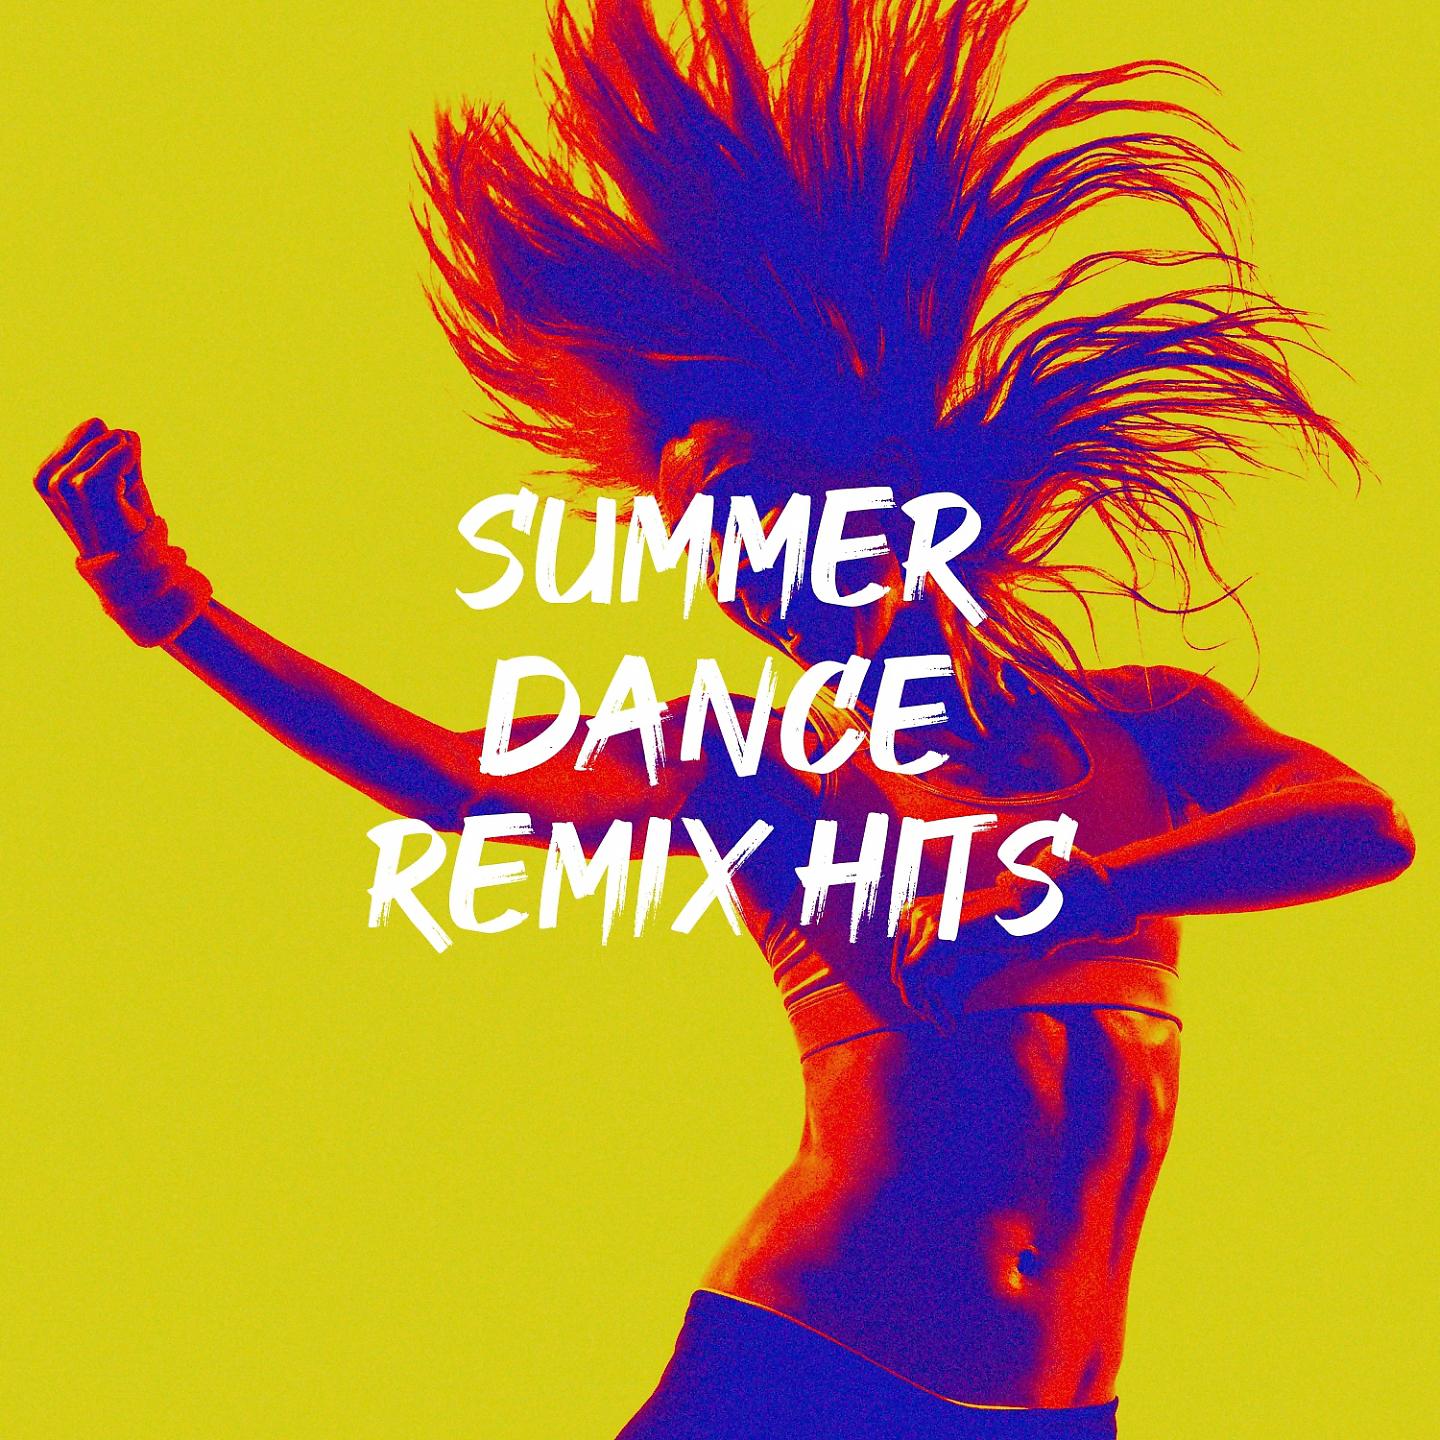 Summer dance remix